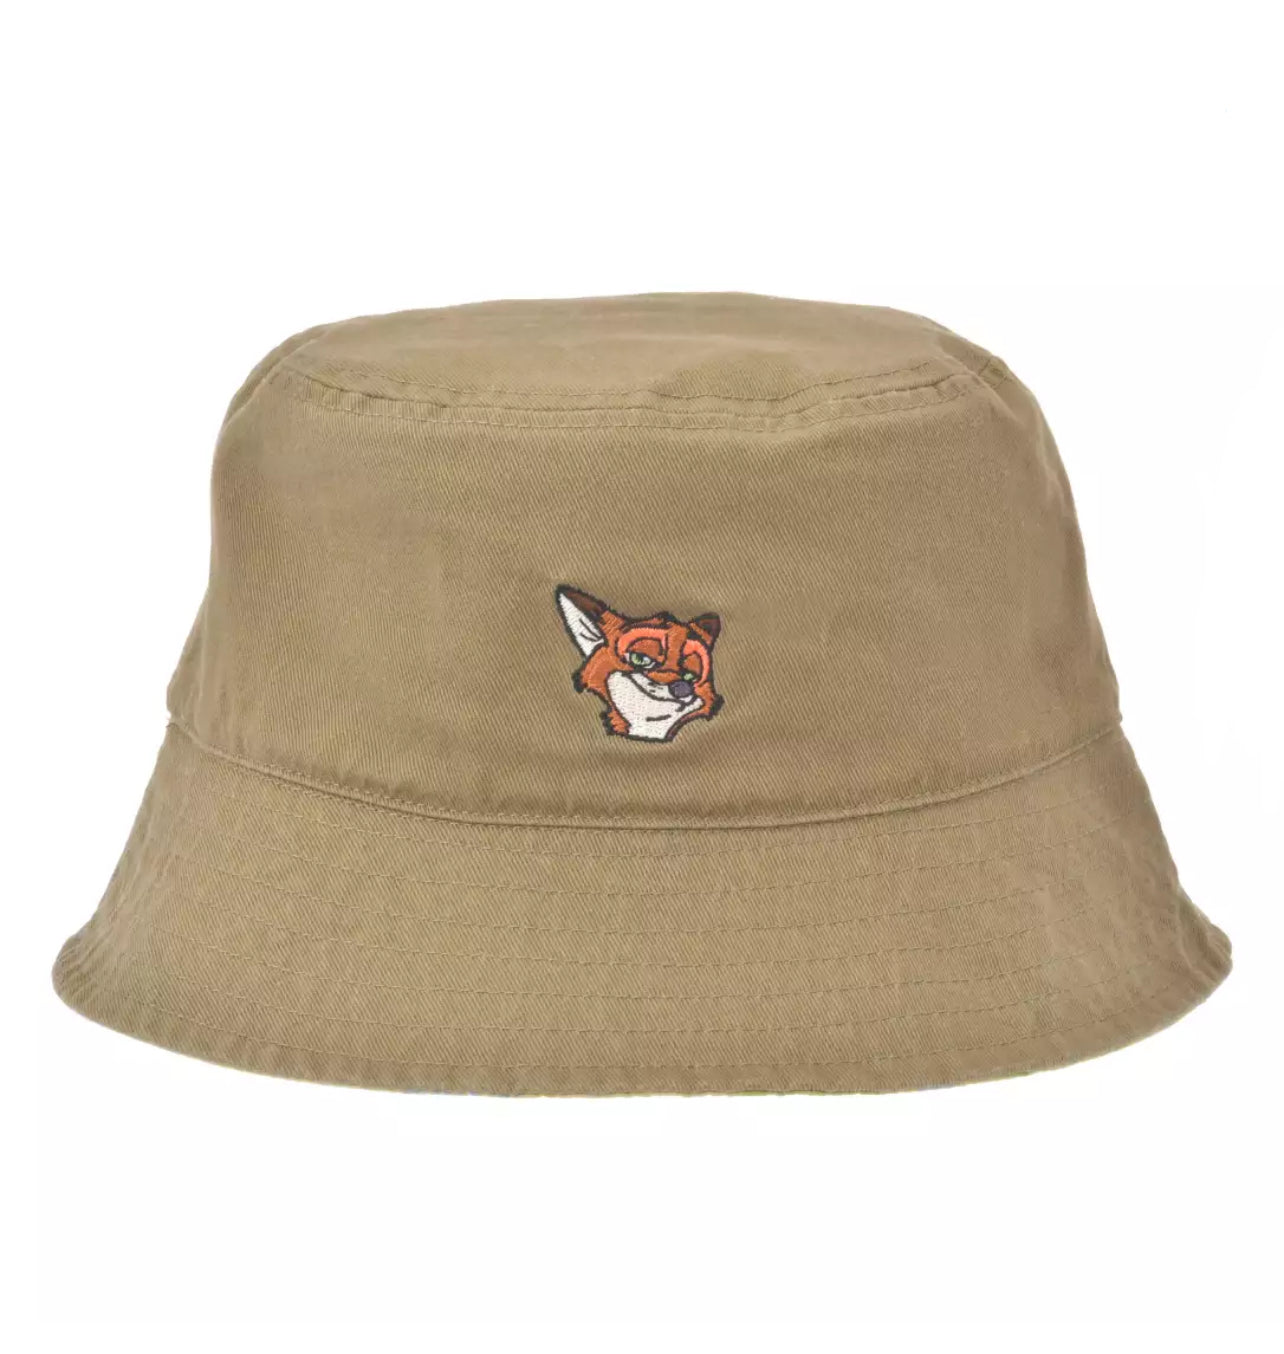 Disney store Zootopia nick reversible bucket hat